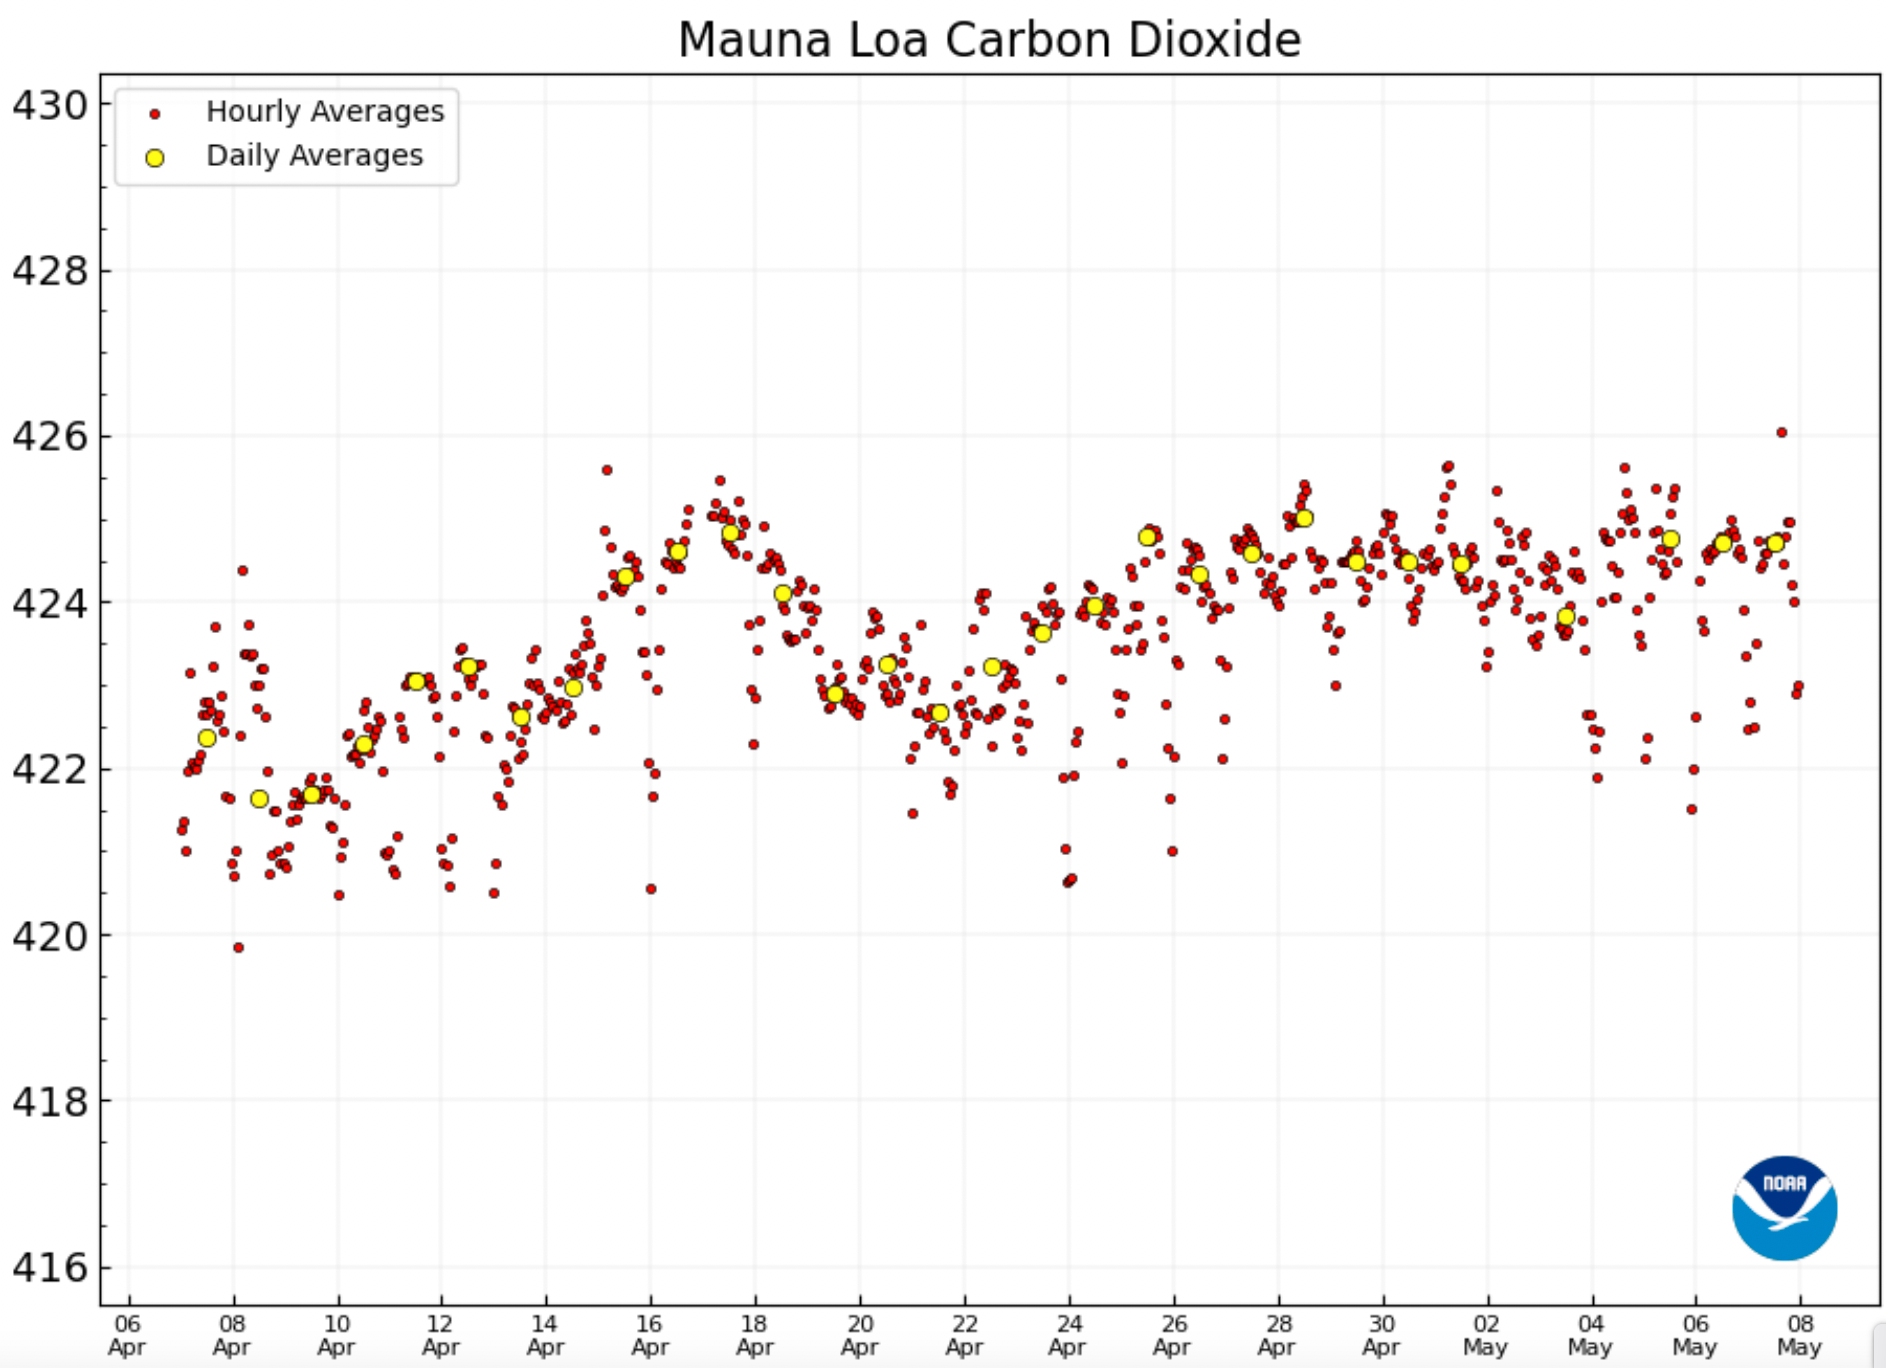 Kurvan över koldioxidhalten i atmosfären fortsätter stadigt att öka.